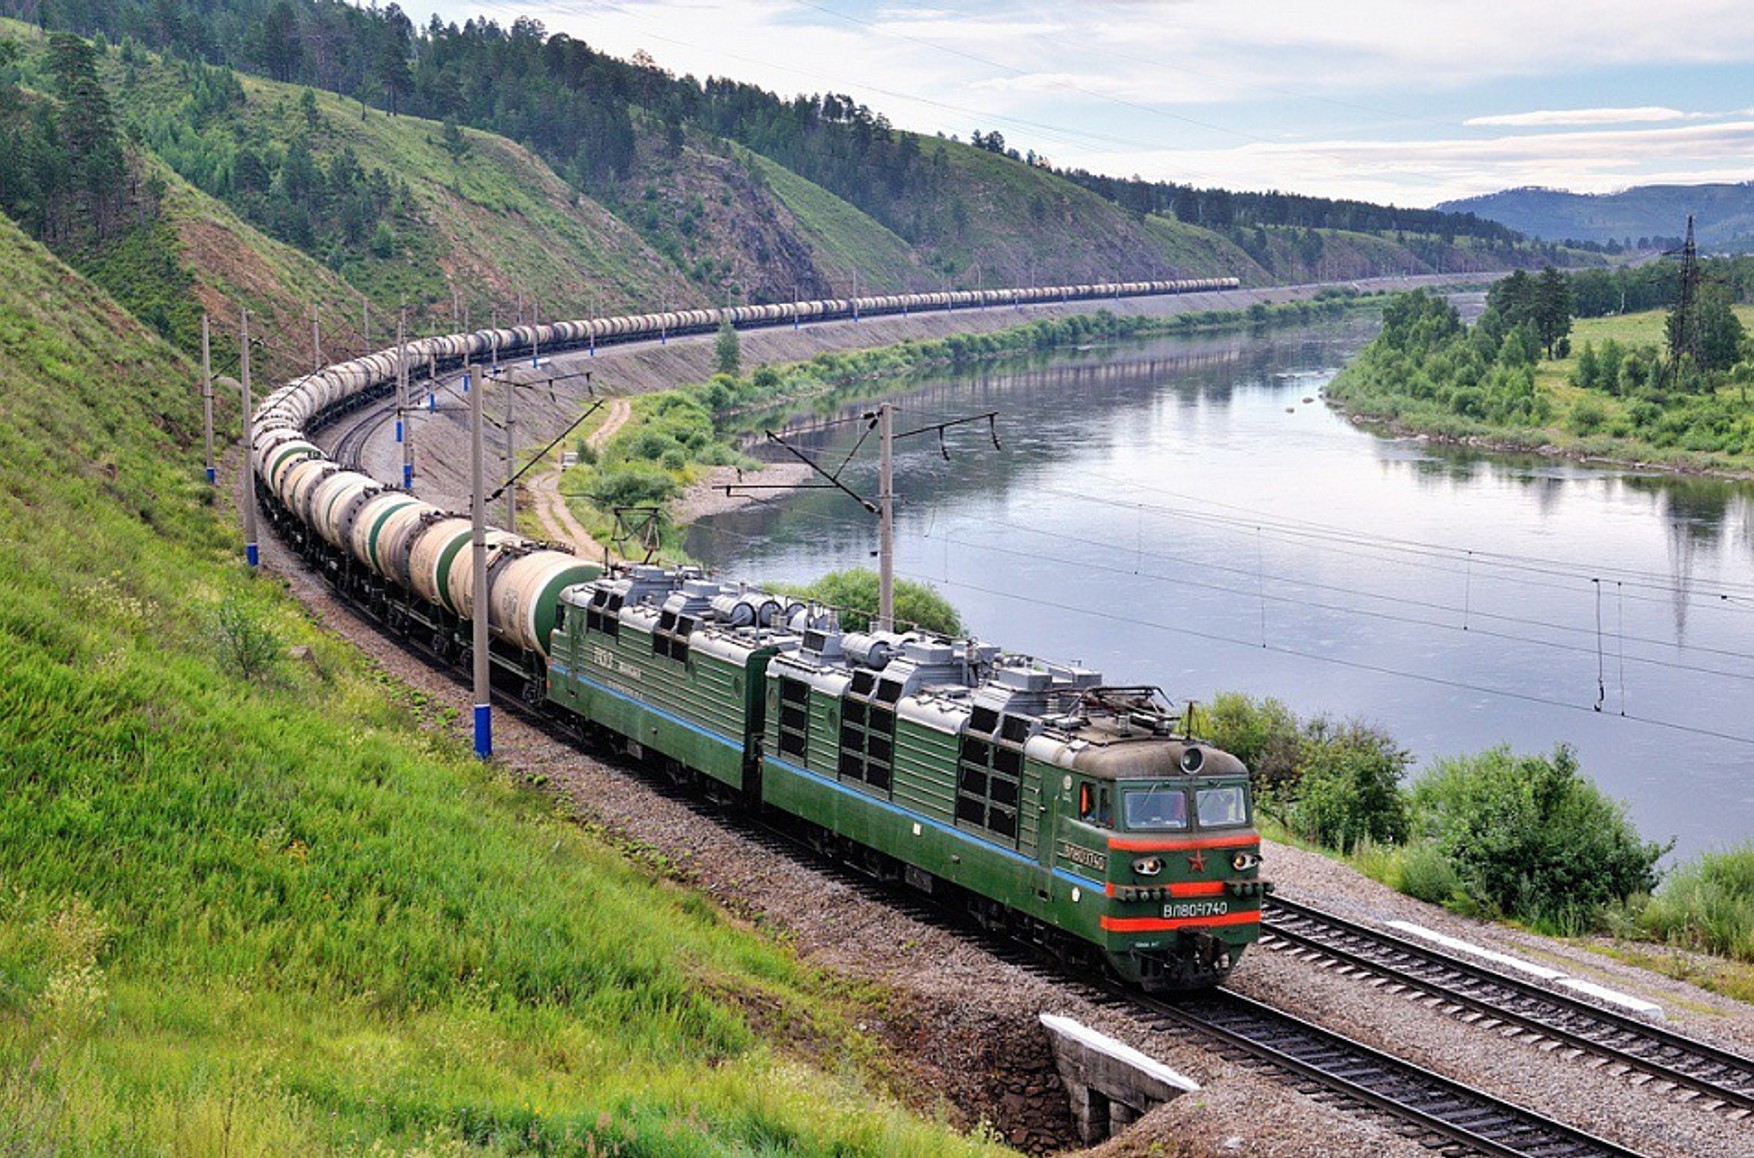 Baza: В Курской области неизвестные подорвали железнодорожное полотно